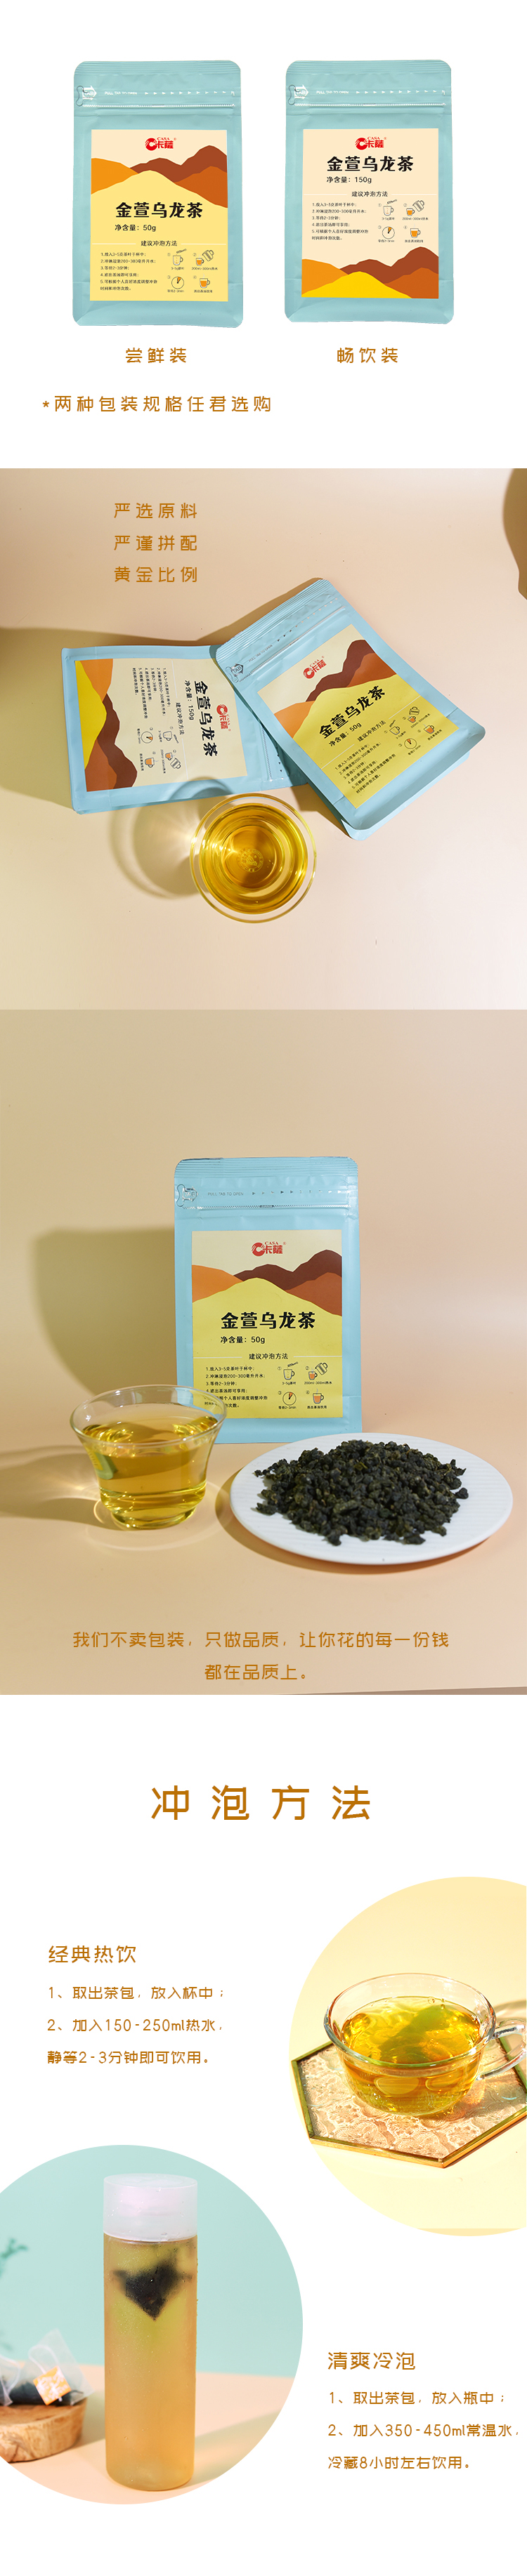 桔扬乌龙茶+花茶系列